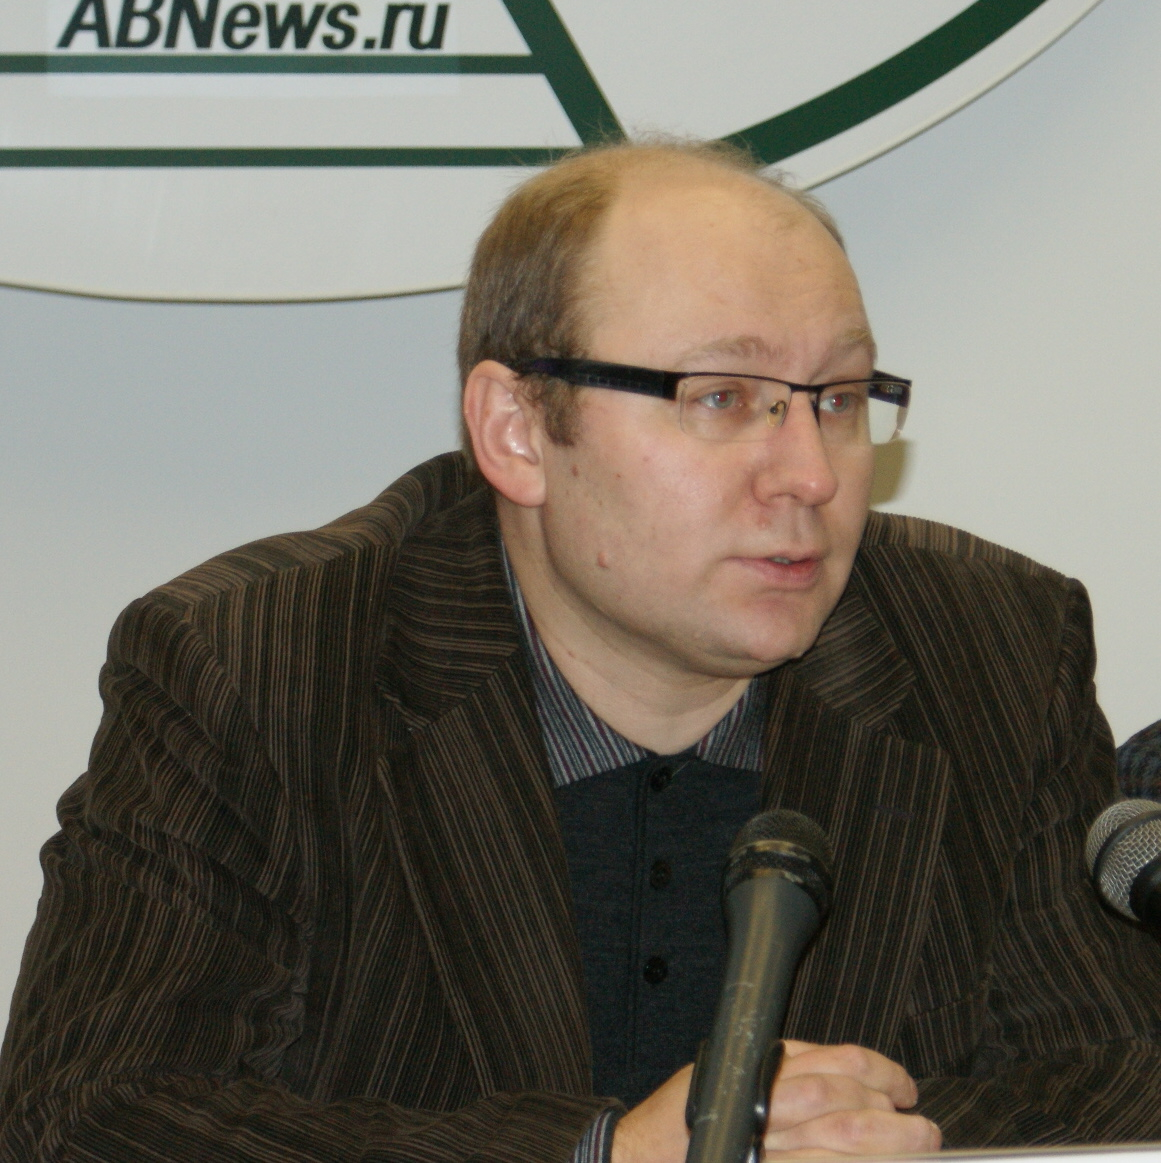 Павел Созинов - председатель правления Северо-Западной палаты недвижимости
